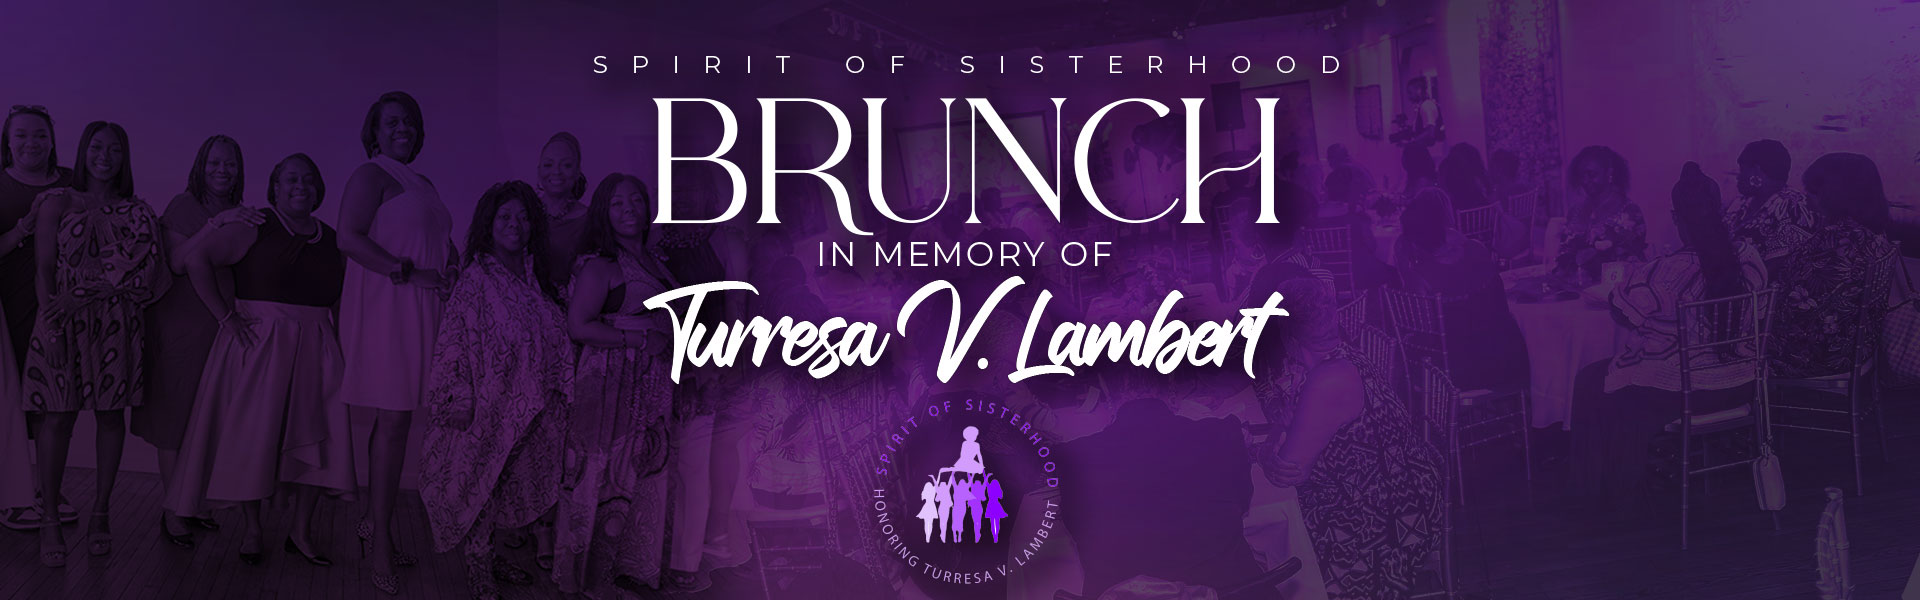 The Spirit of Sisterhood Brunch Honoring Turressa V. Lambert